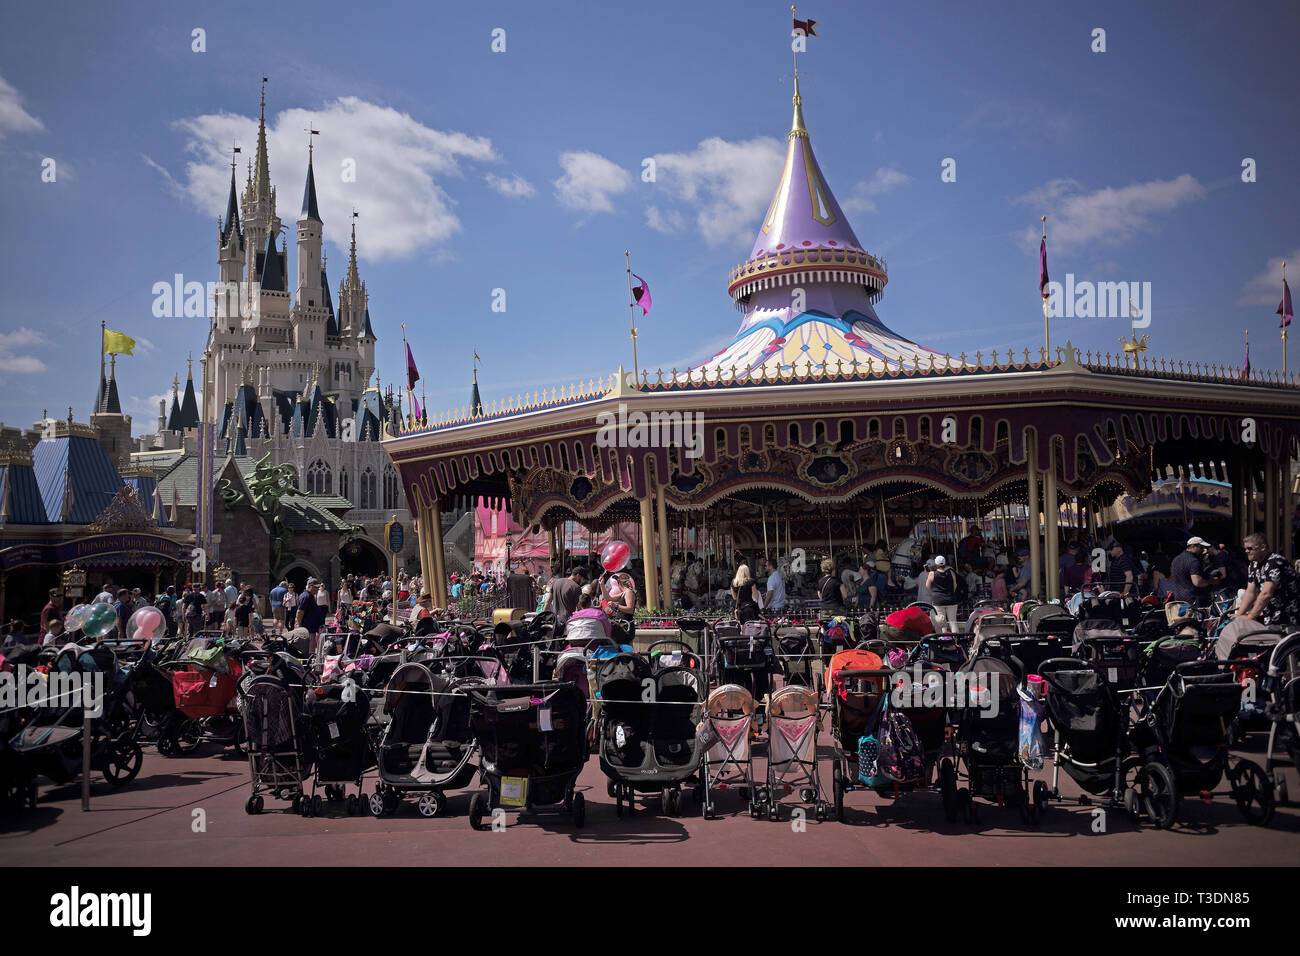 Kinderwagen im Fantasyland in Disneyworld geparkt. Stockfoto